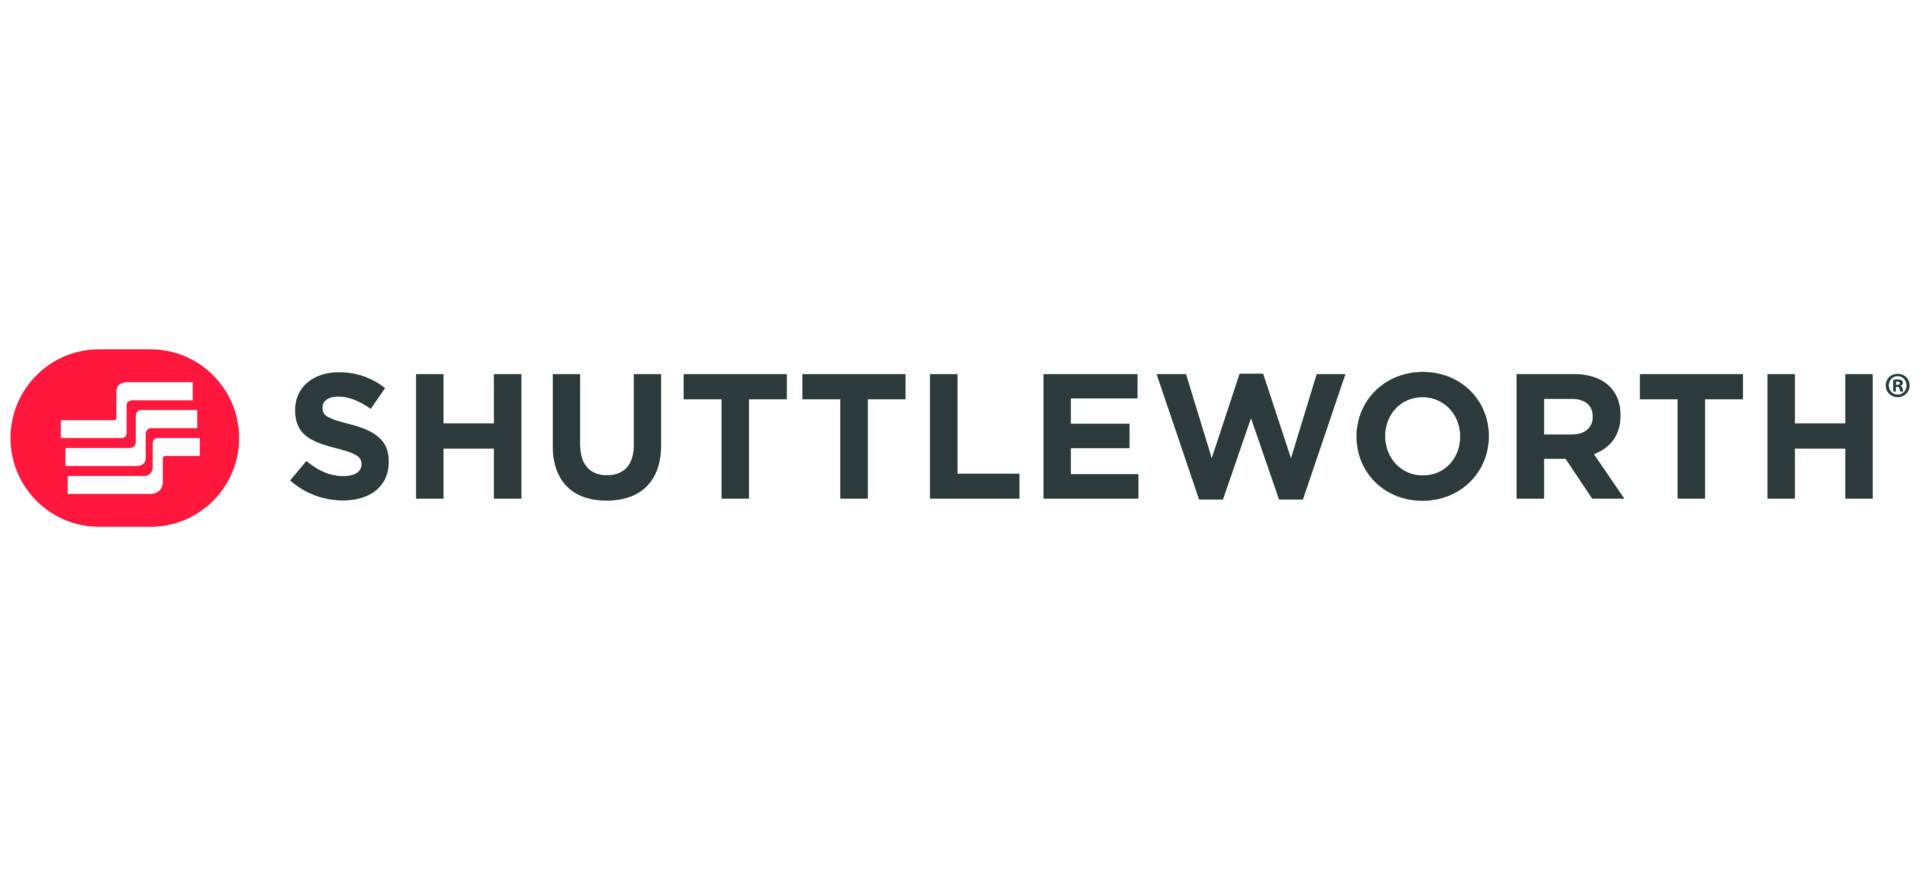 Shuttleworth-Empack-Logo-01